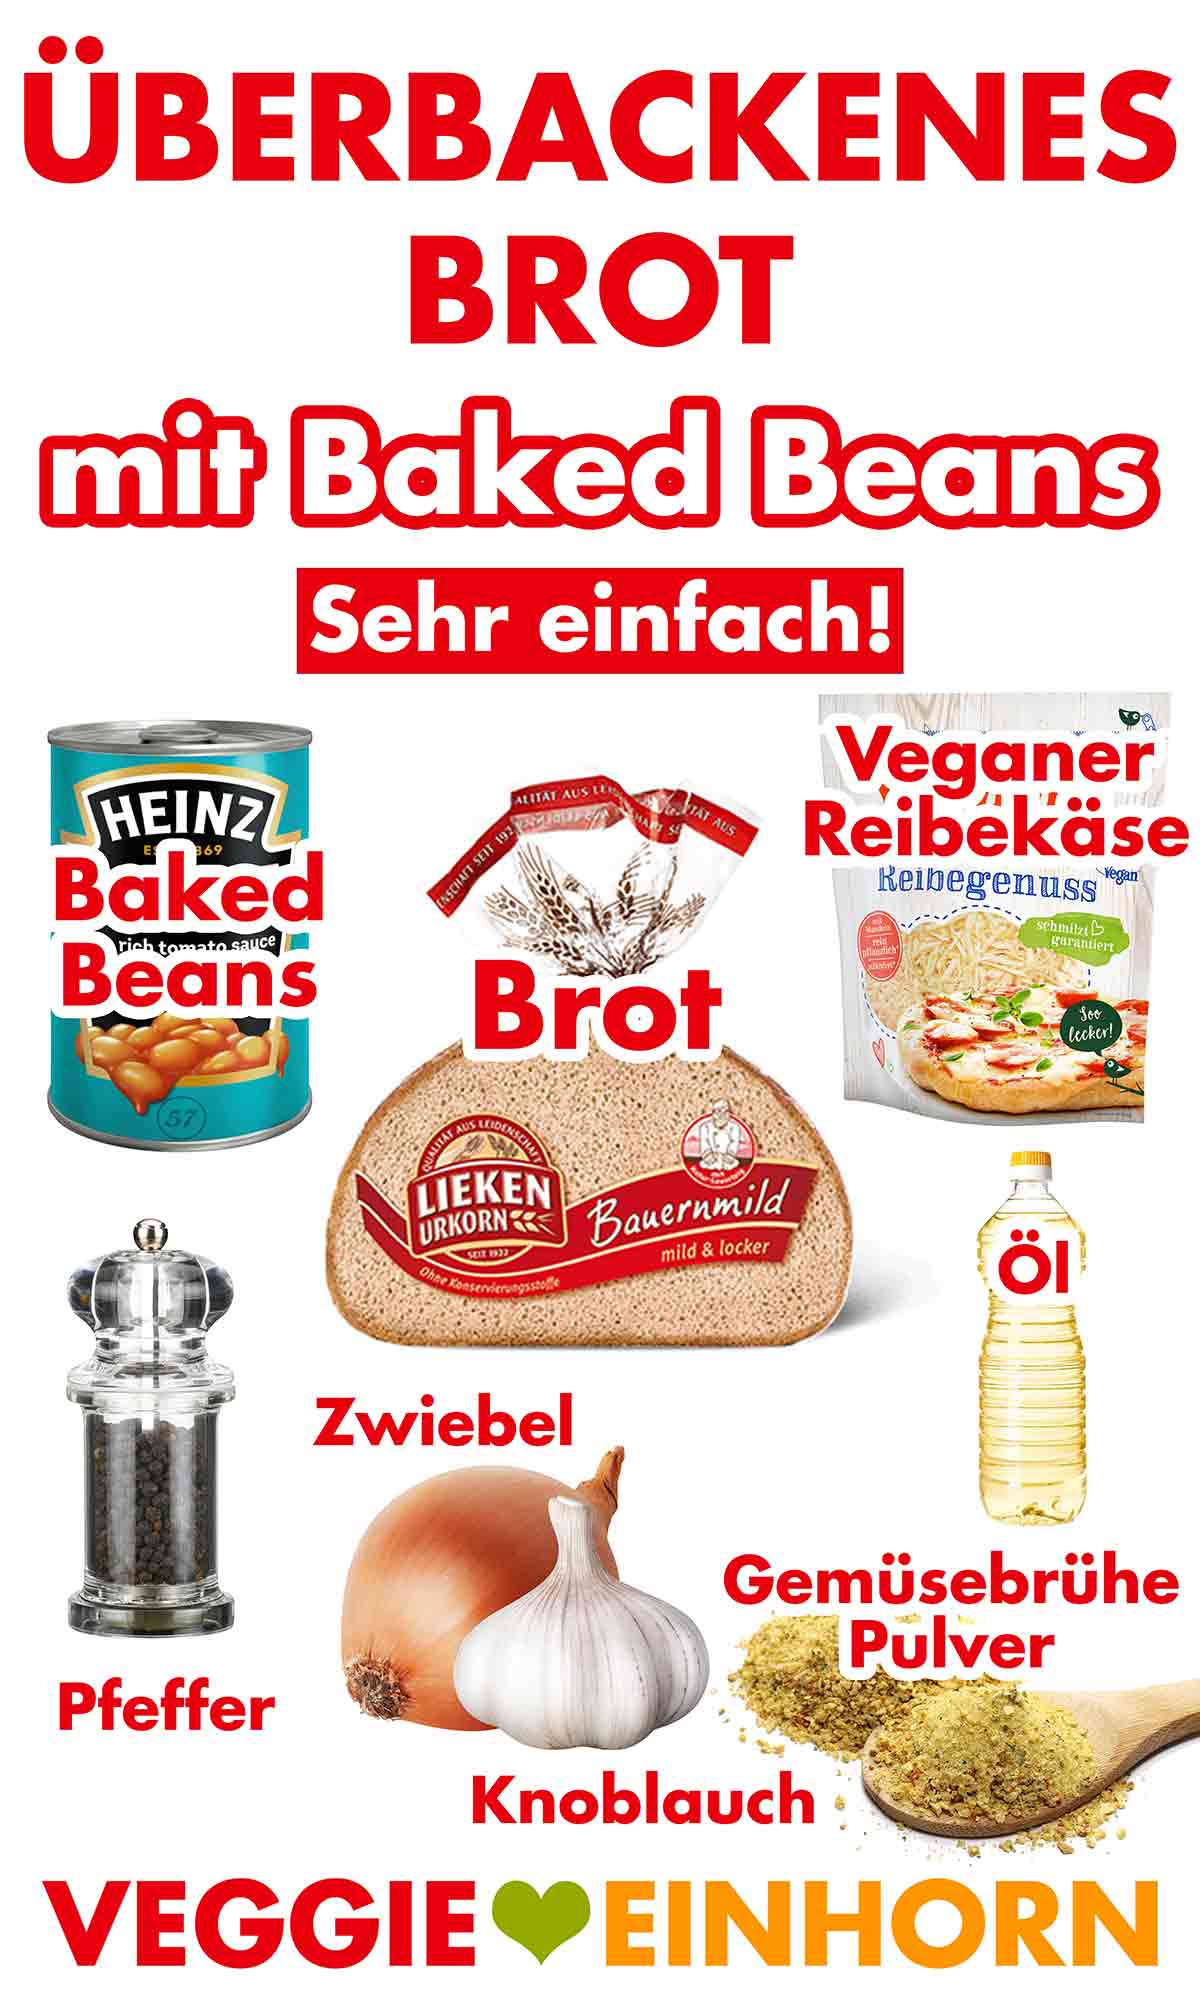 Zutaten für überbackenes Brot mit Baked Beans aus der Dose